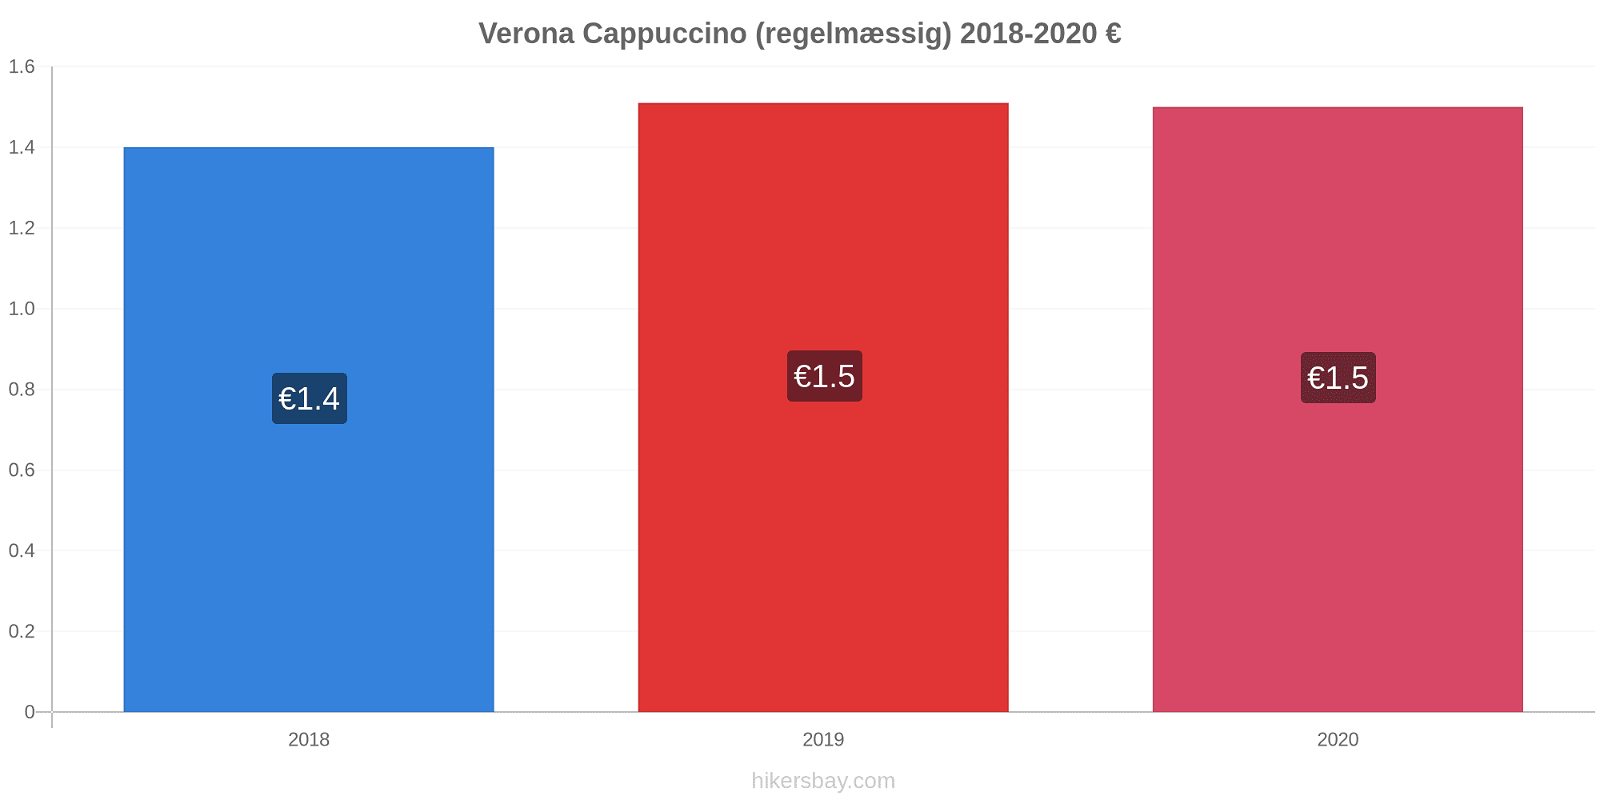 Verona prisændringer Cappuccino (regelmæssig) hikersbay.com